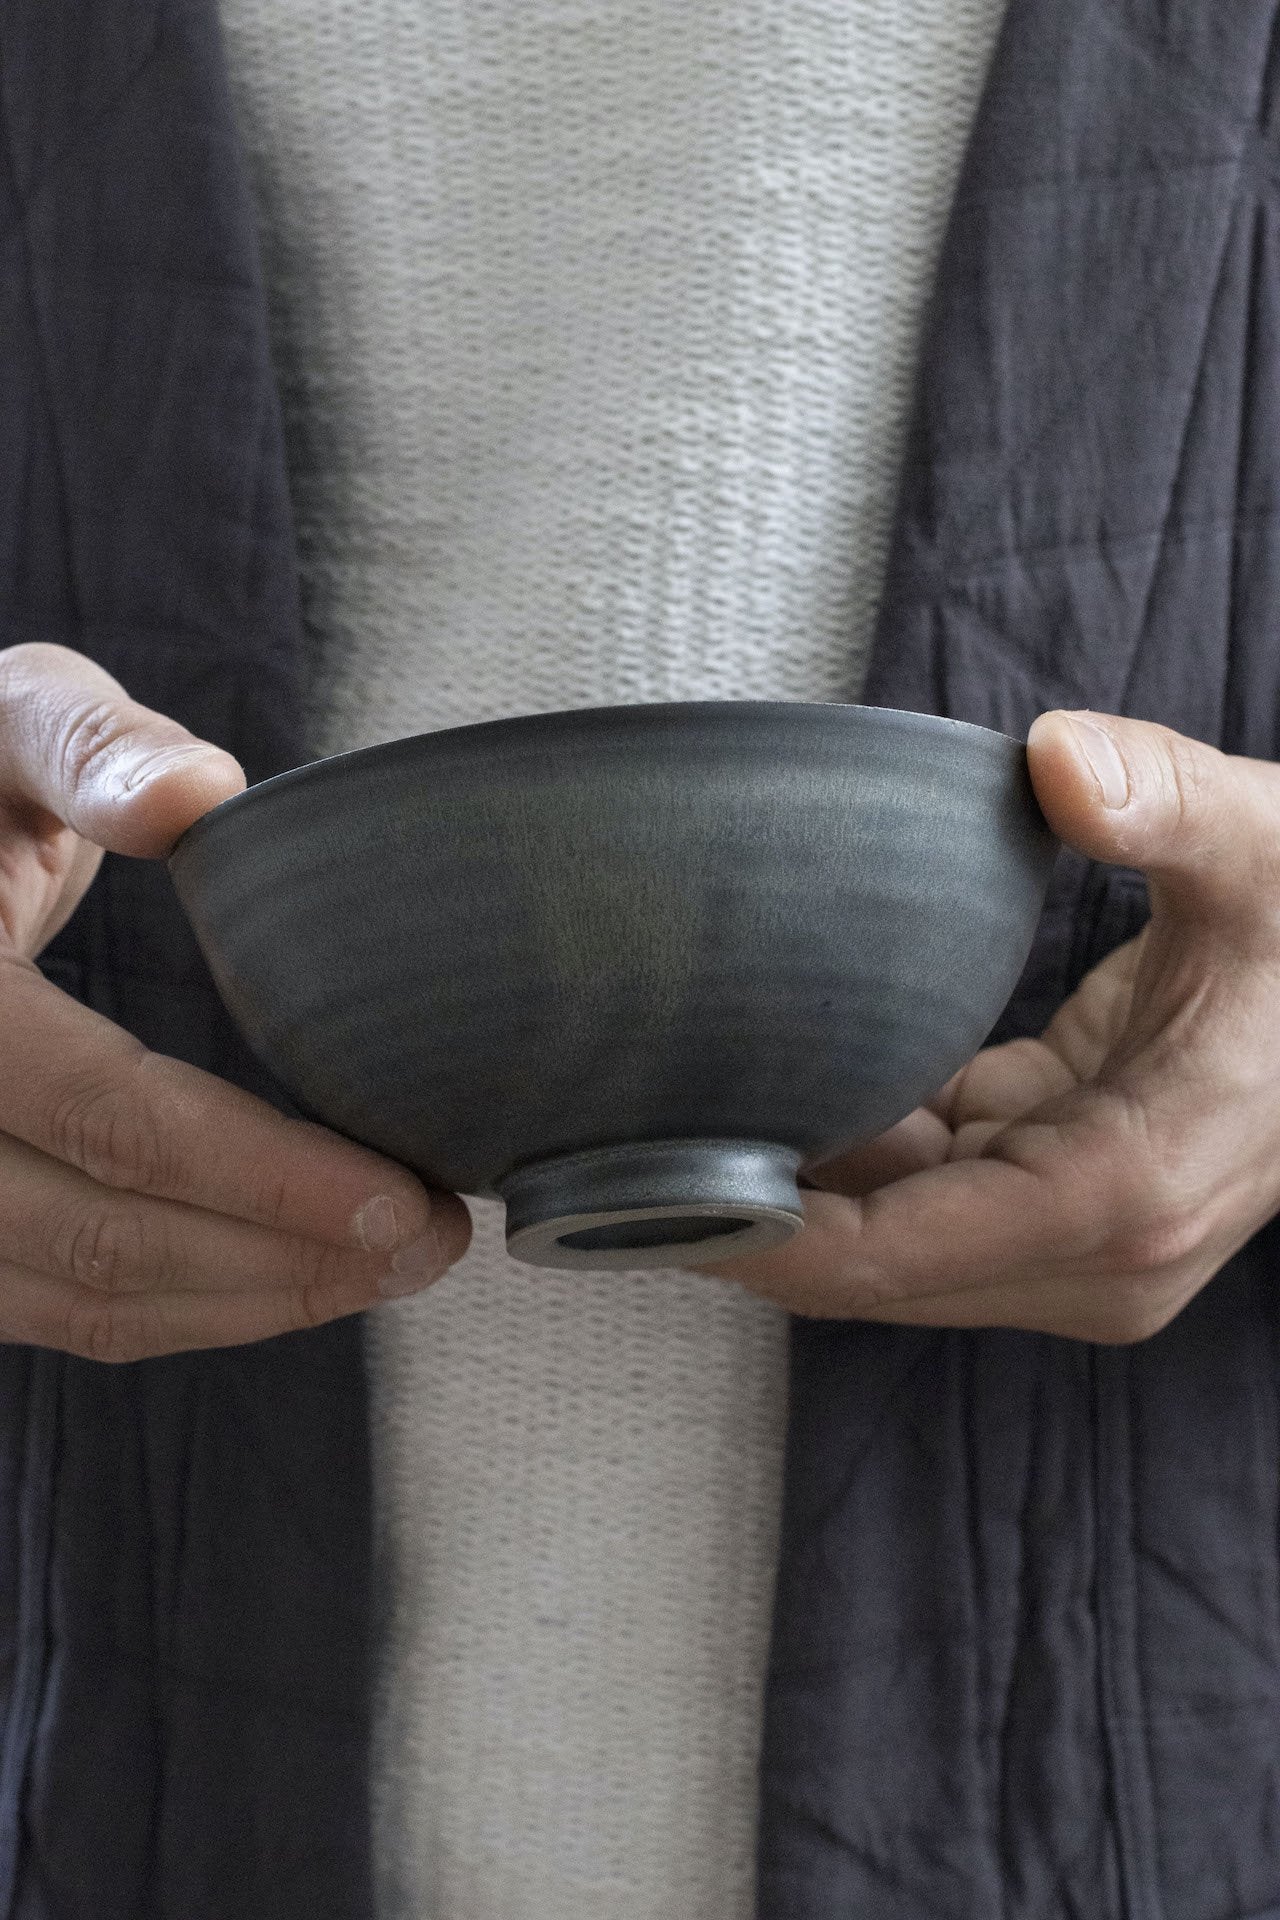 Small Footed Bowl | Pearl Grey | by Borja Moronta - Lifestory - Borja Moronta